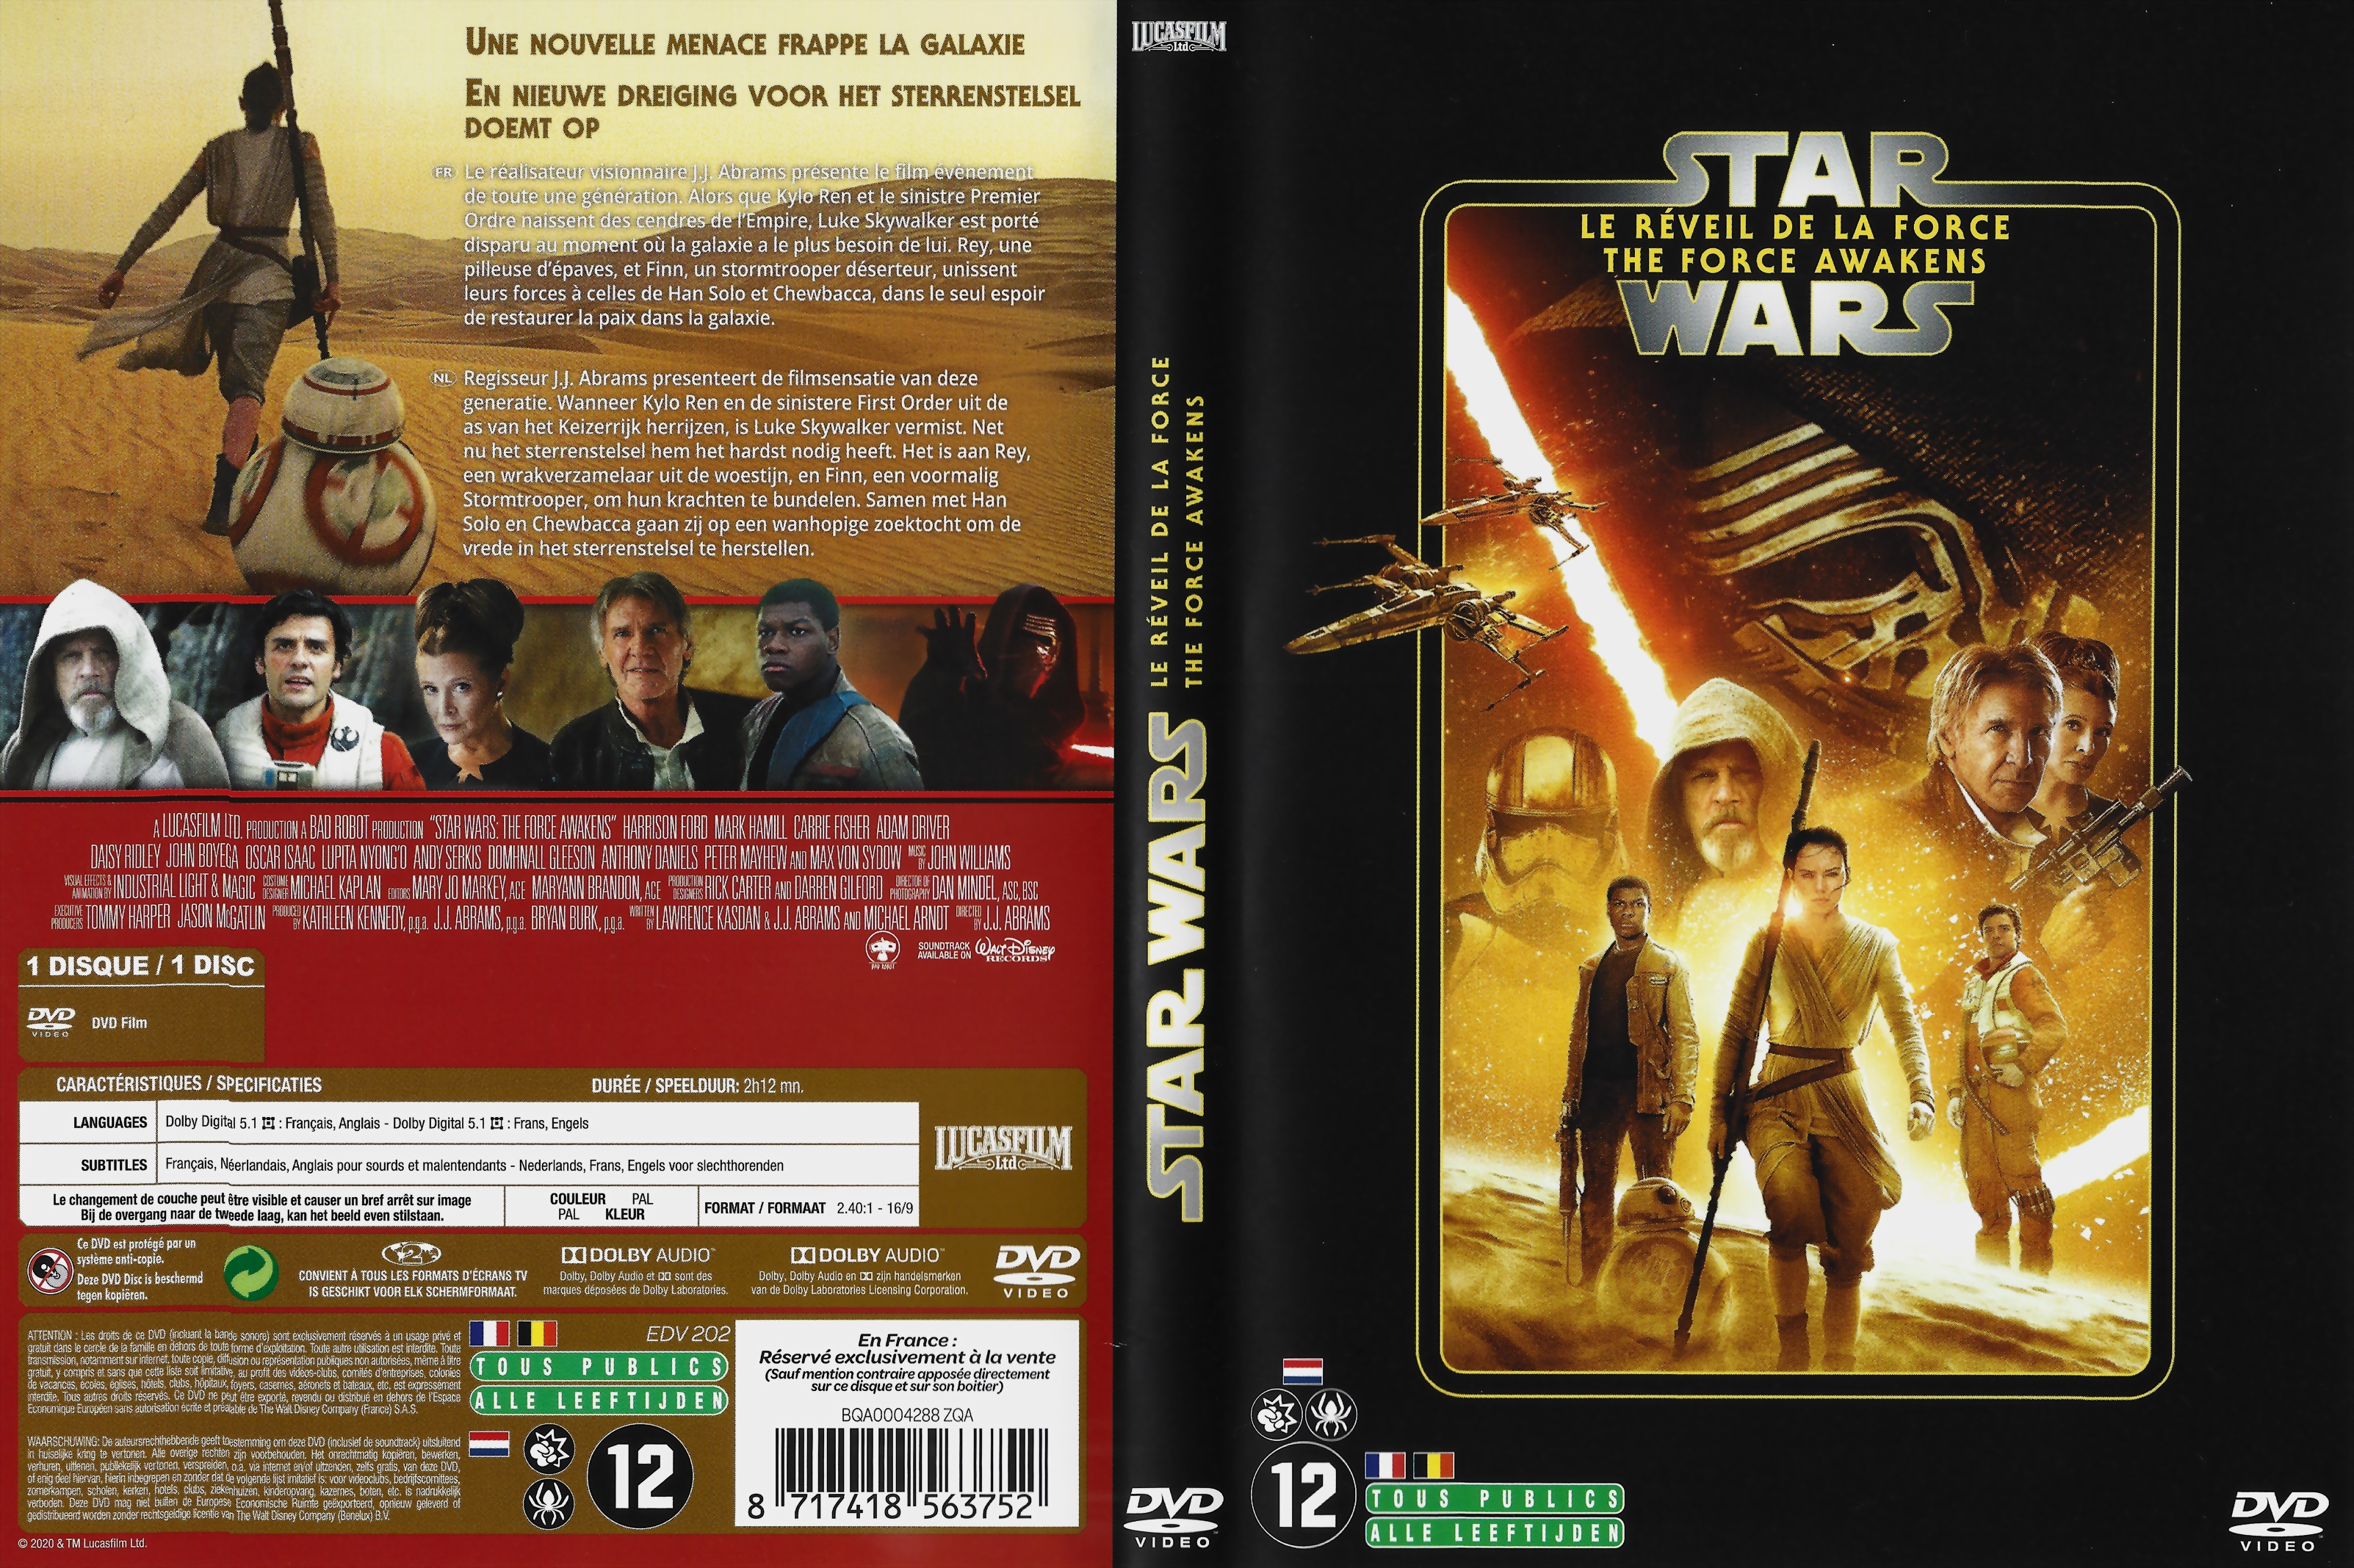 Jaquette DVD Star Wars: Episode VII Le rveil de la force